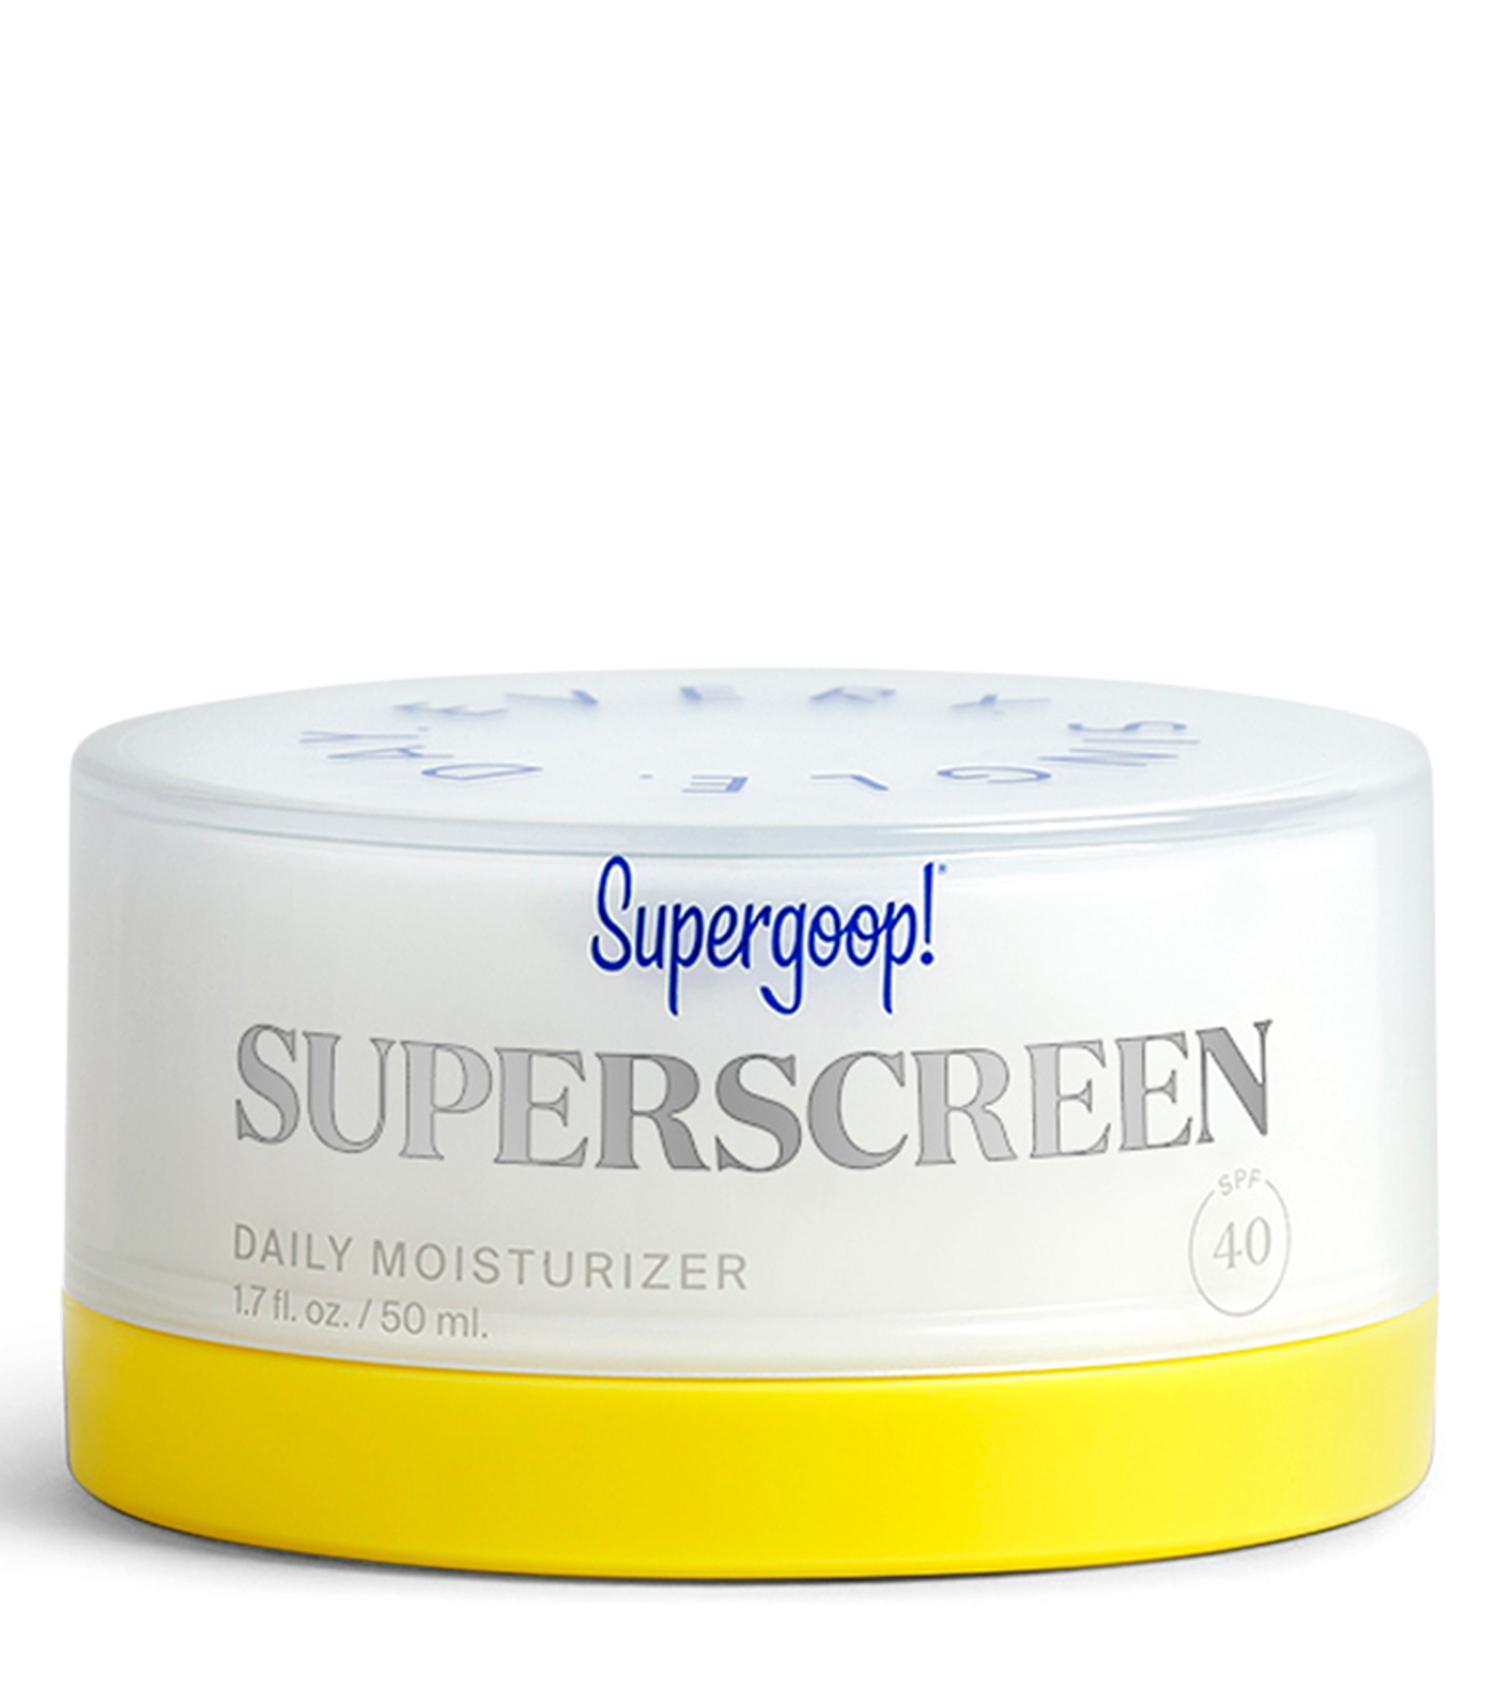 Superscreen Daily Moisturizer SPF 40  1